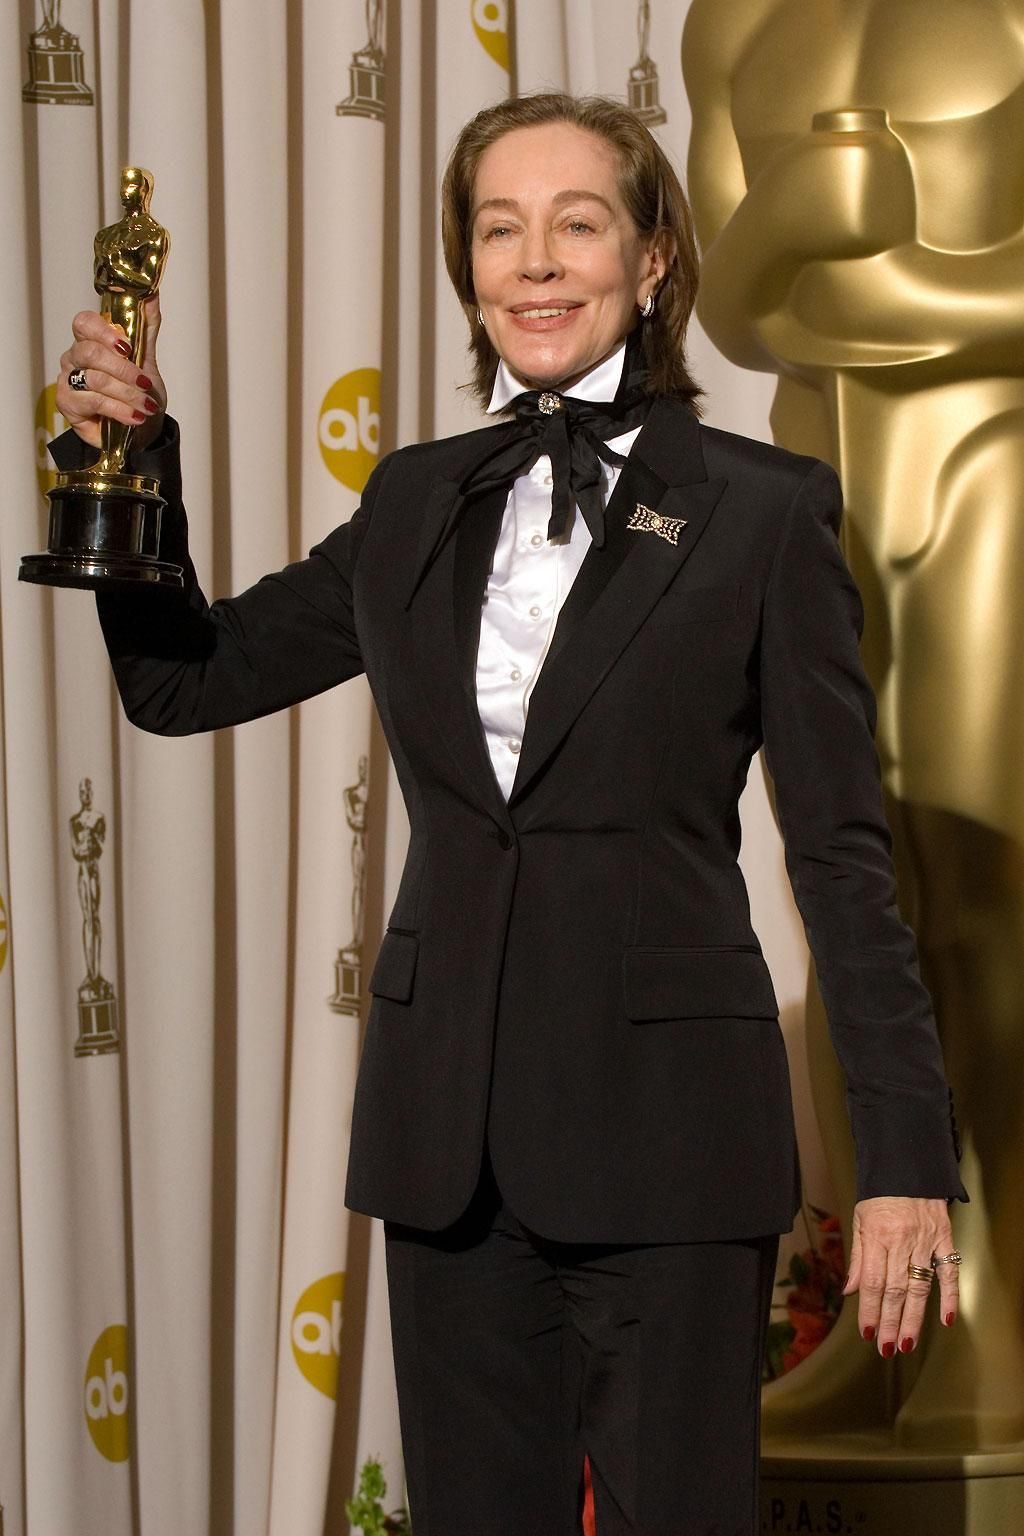 Milena Canonero lors de la 79e cérémonie des Oscars en 2007 pour “Marie-Antoinette” de Sofia Coppola (2006).

